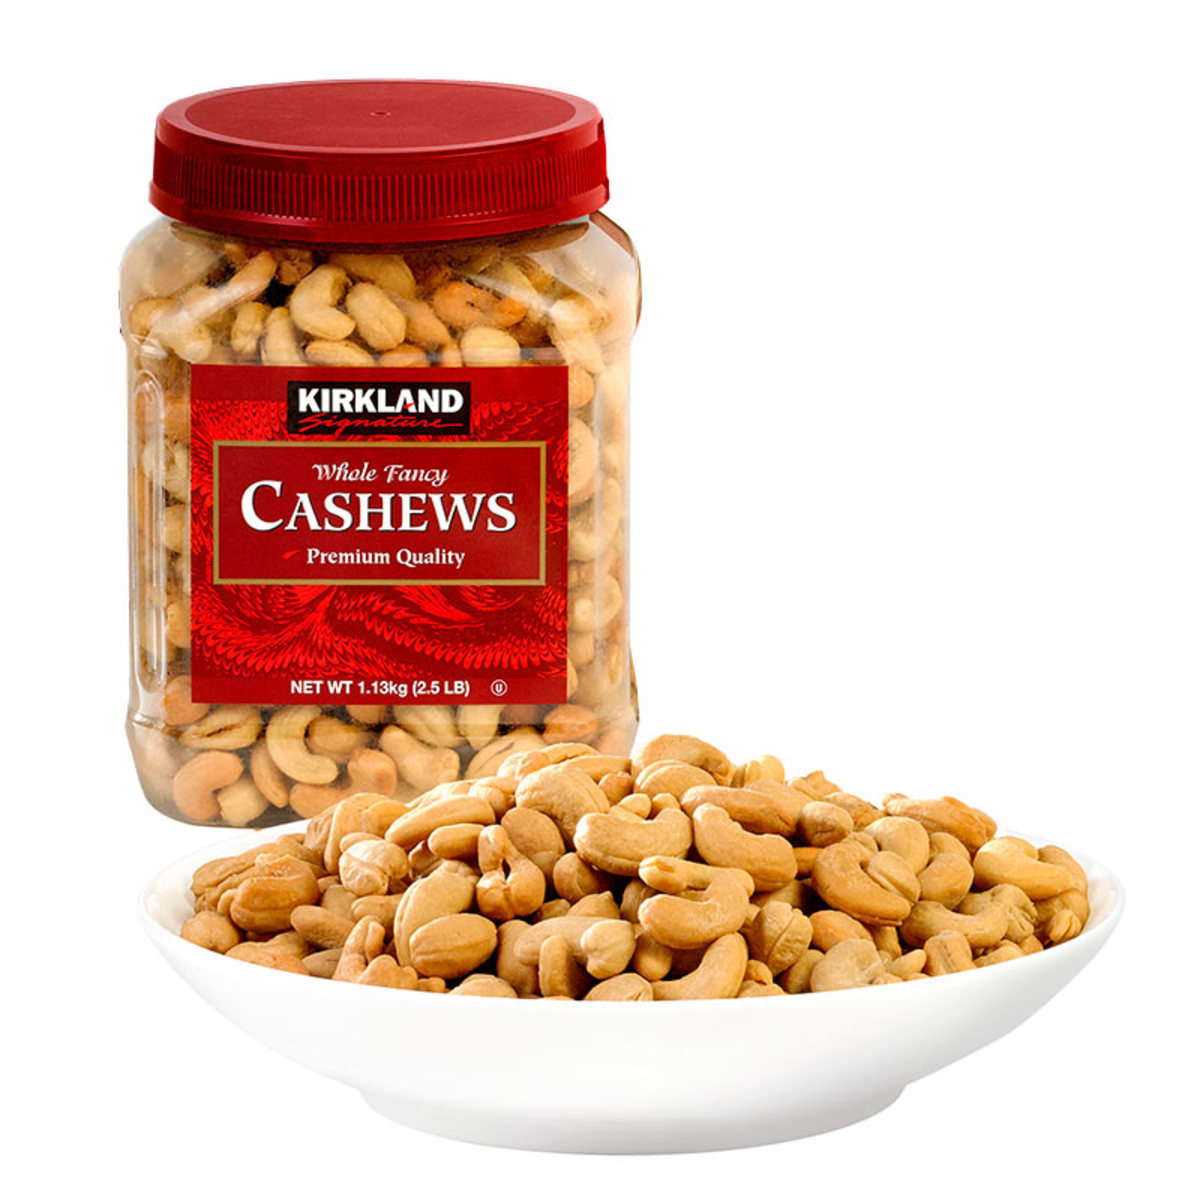 Kirkland Signature Cashew Nuts Halves & Pieces, 1.13kg